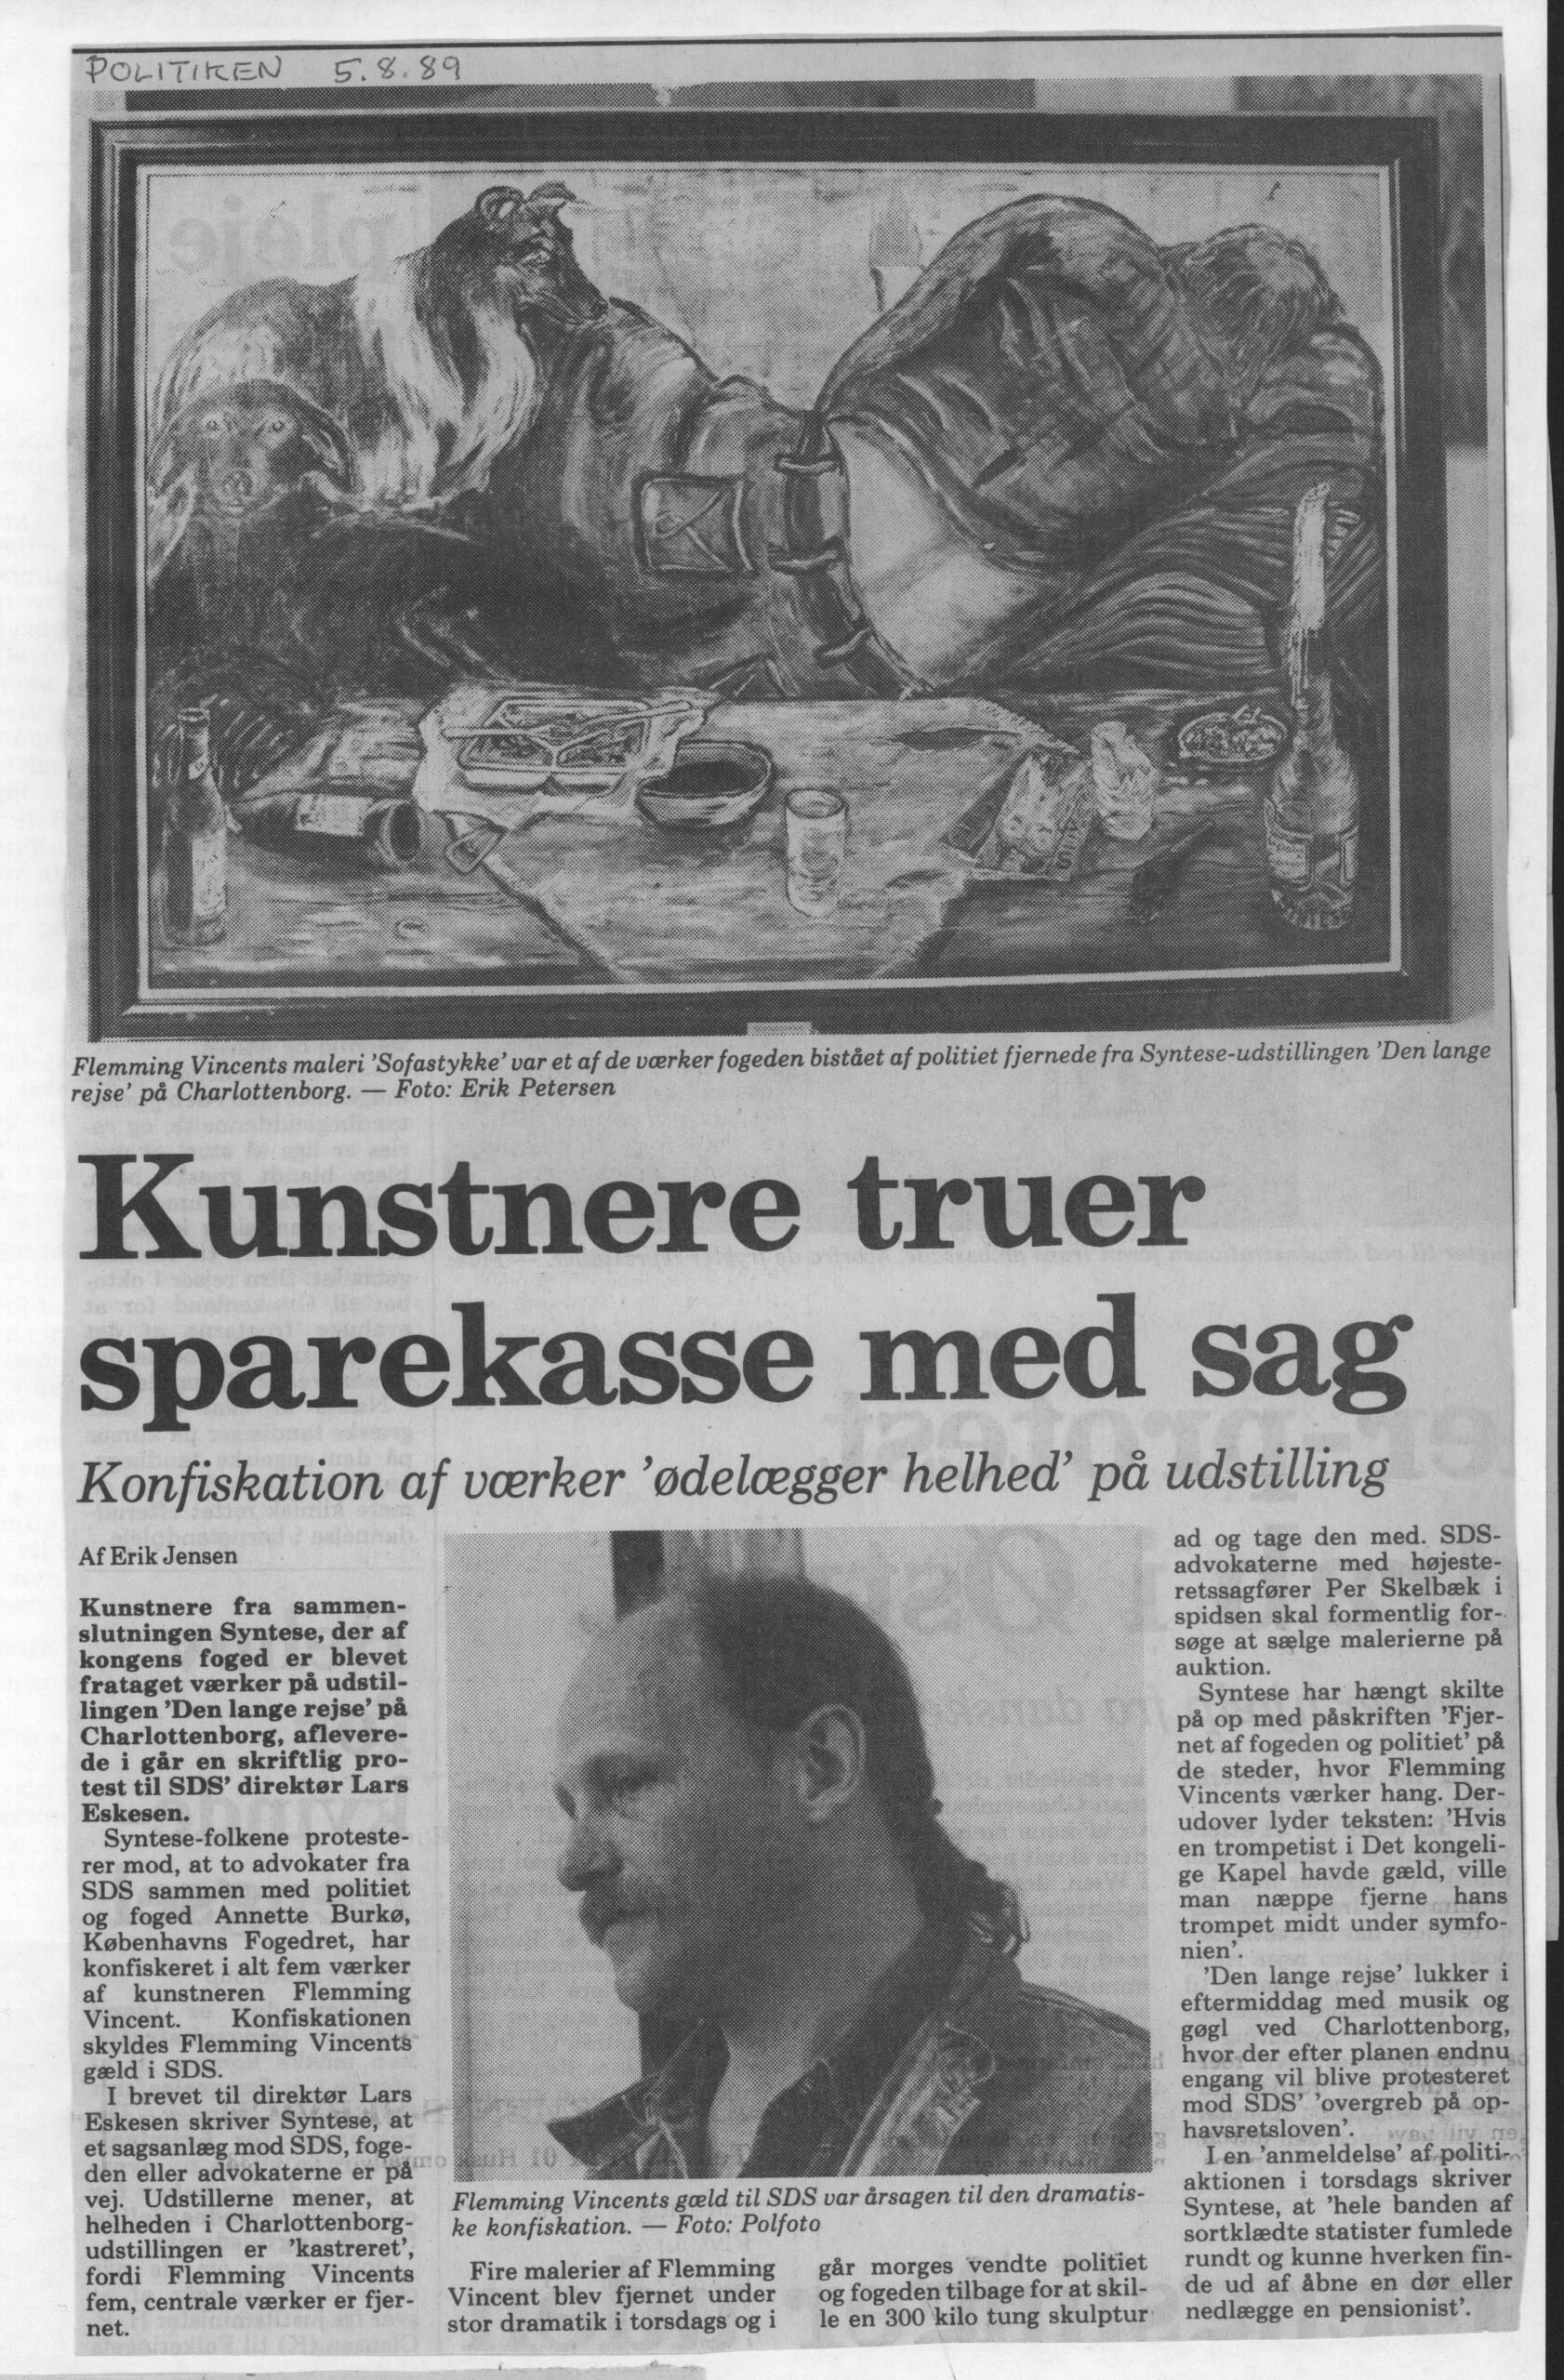 Kunstnere truer sparekasse med sag. Omtale (Retssag. Den lange rejse. Charlottenborg 1989, København). Erik Jensen. Politiken.